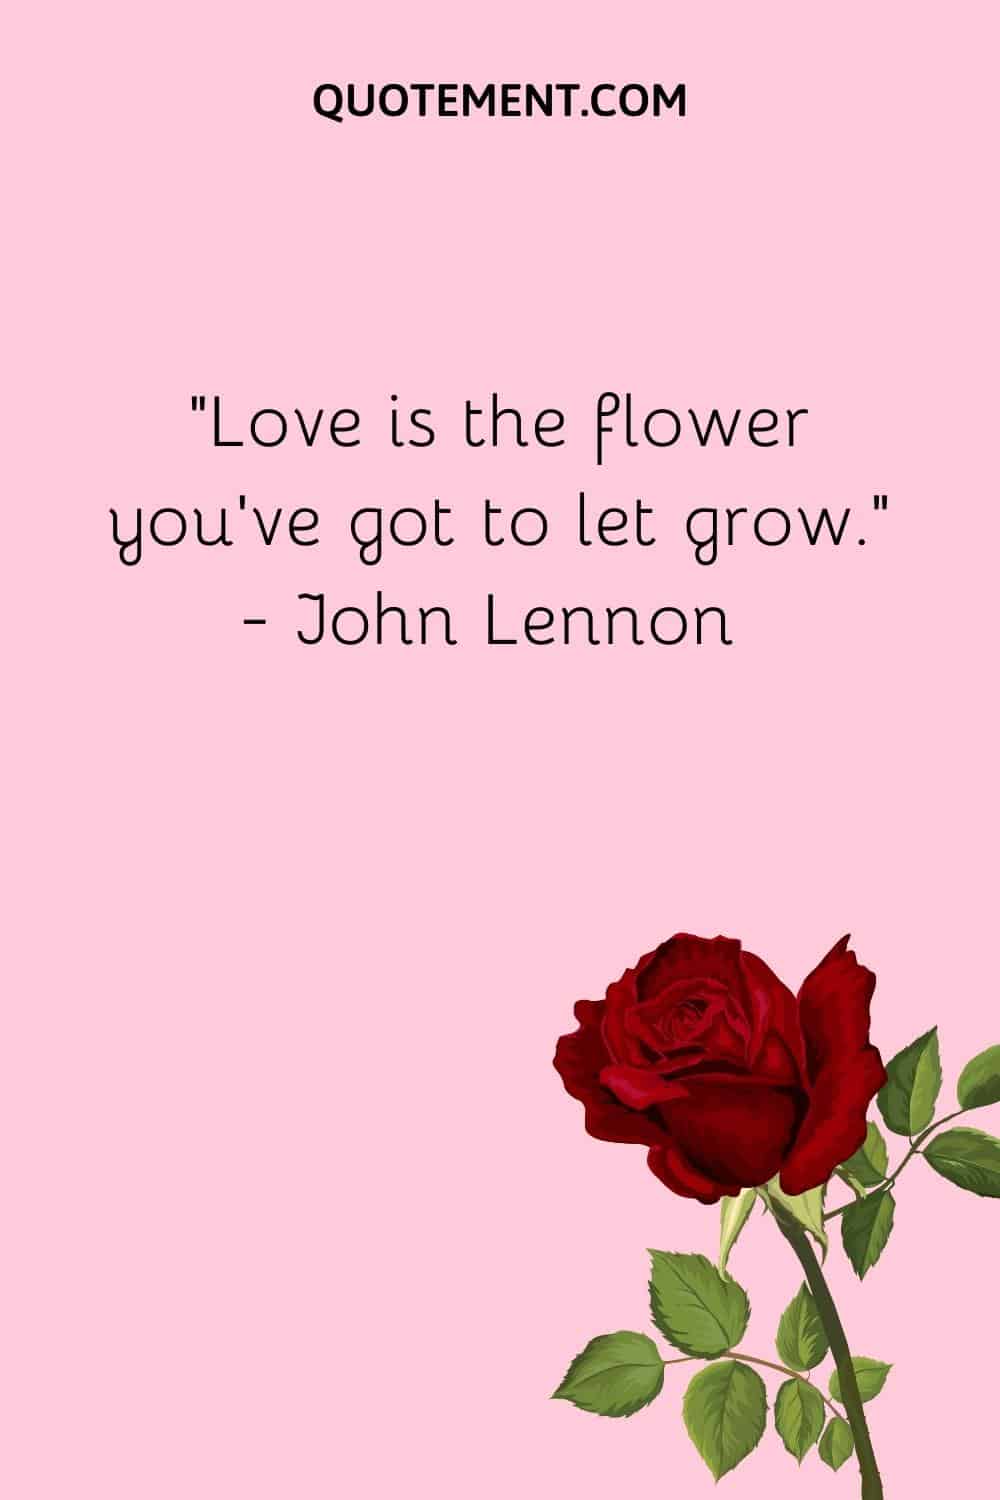 “Love is the flower you’ve got to let grow.” — John Lennon